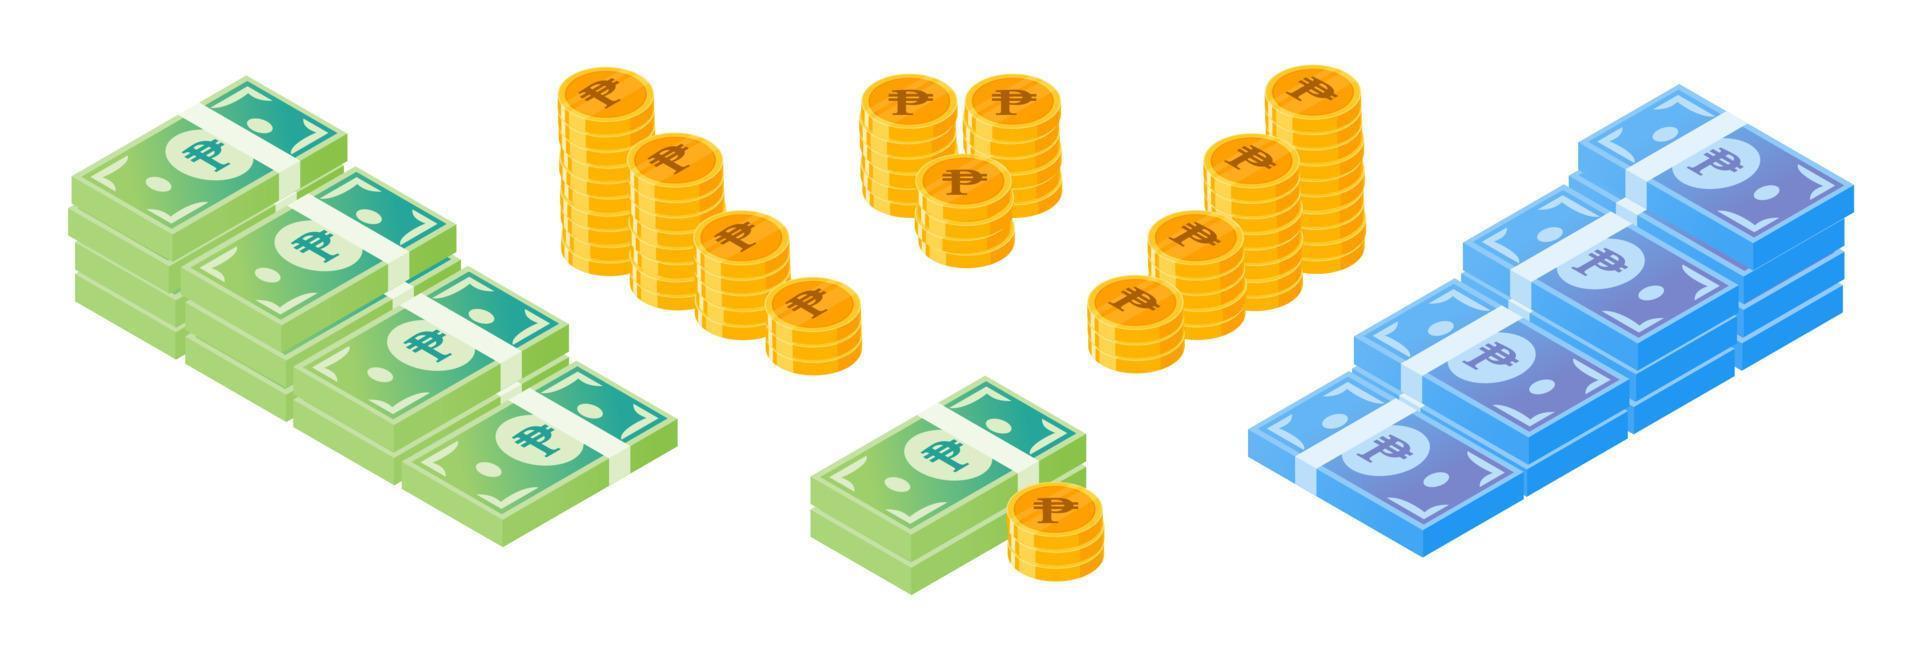 Conjunto de dinheiro e moedas em pesos filipinos vetor